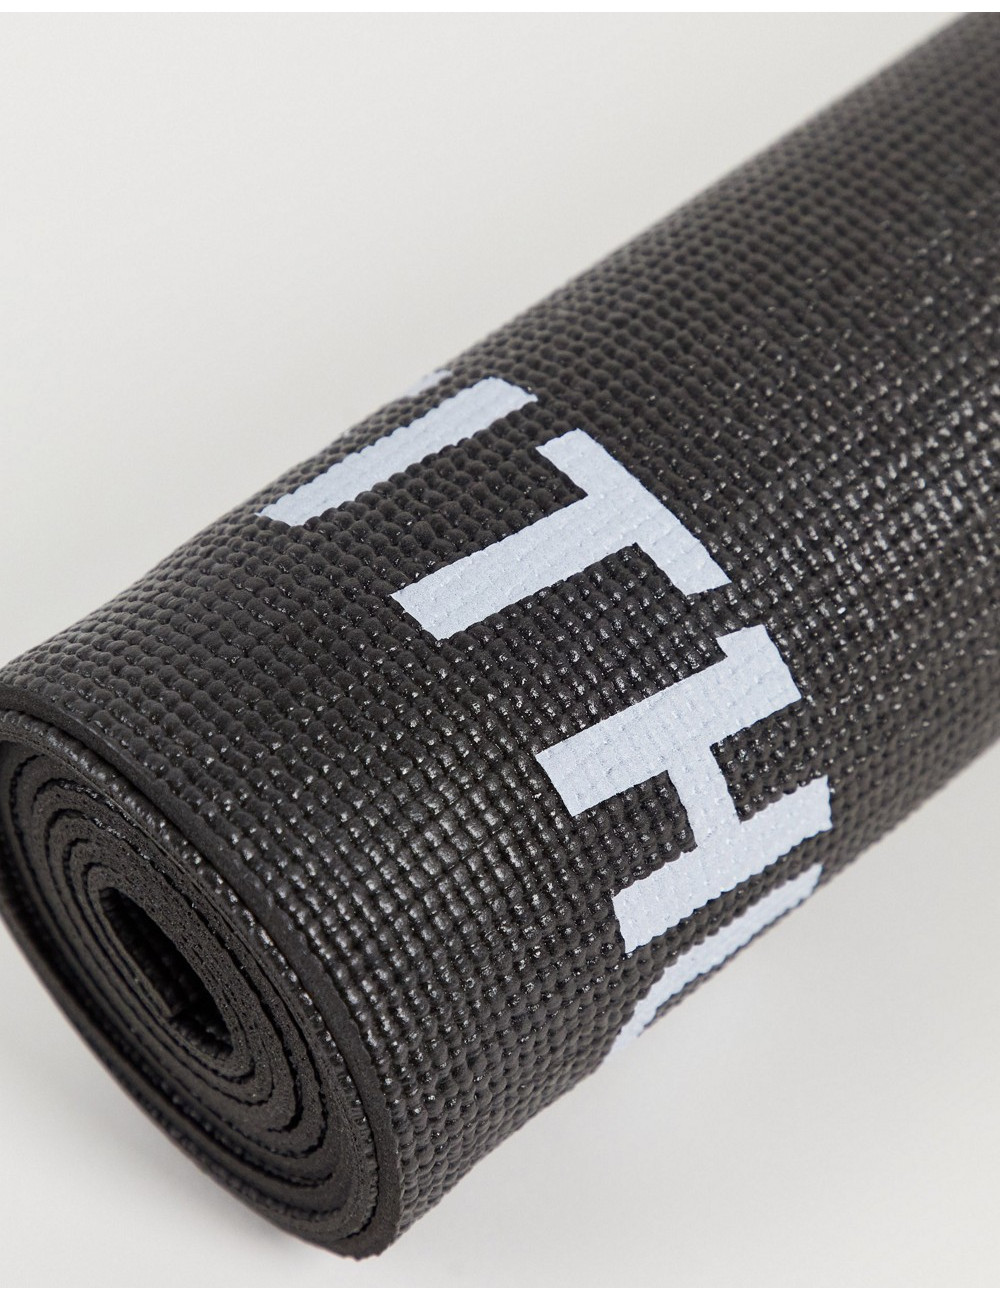 FITHUT yoga mat in black